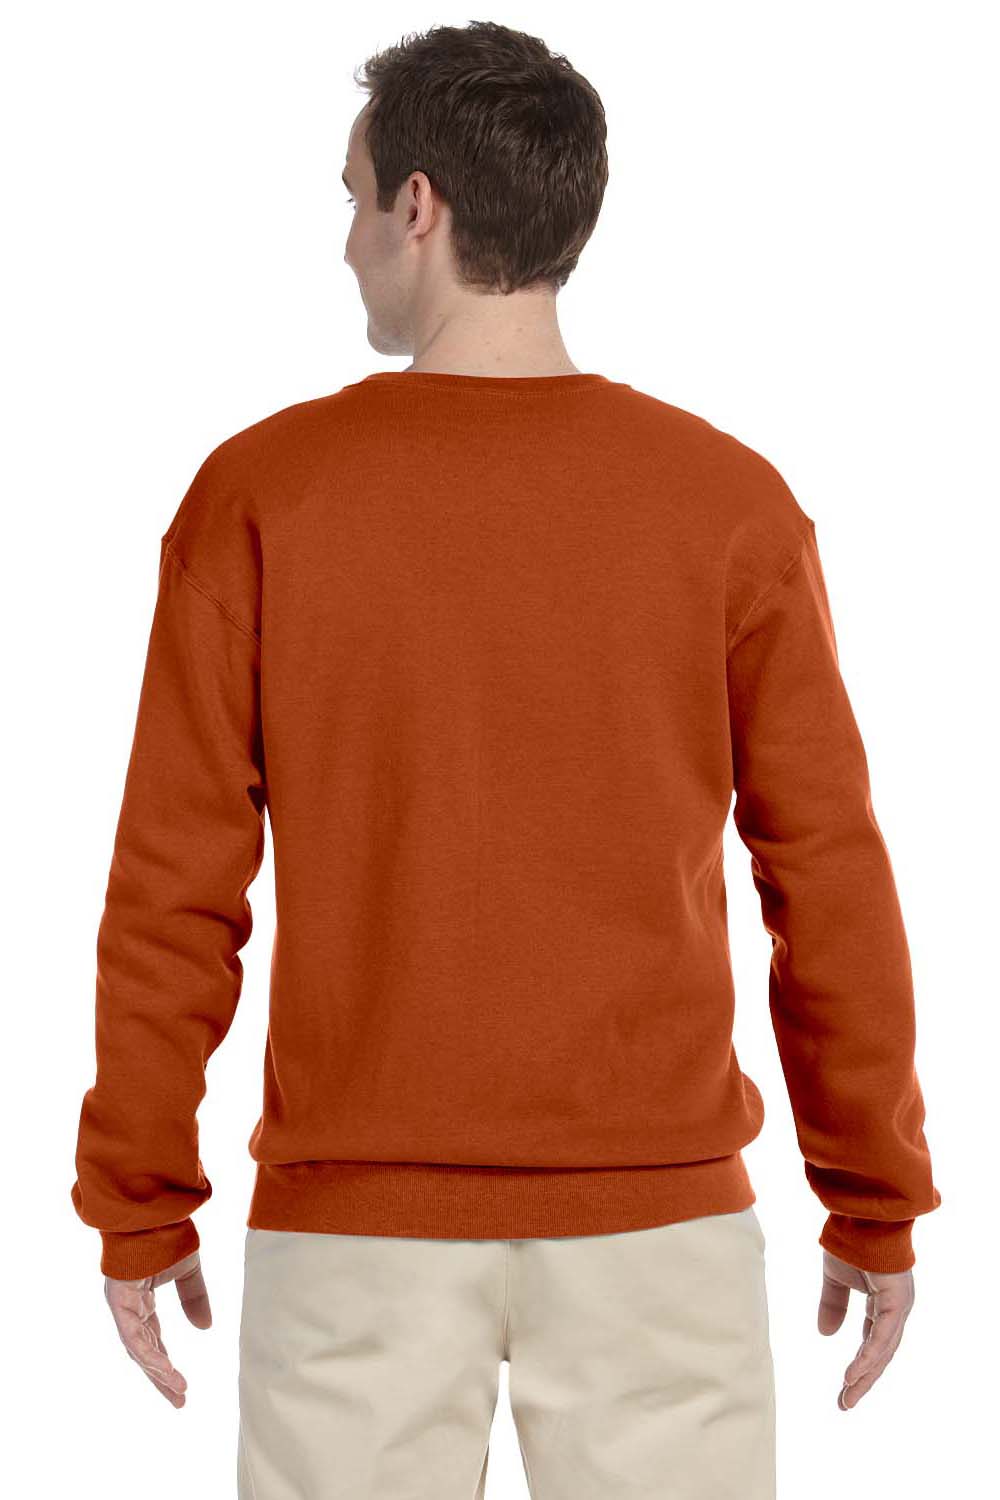 Jerzees 562 Mens NuBlend Fleece Crewneck Sweatshirt Texas Orange Back